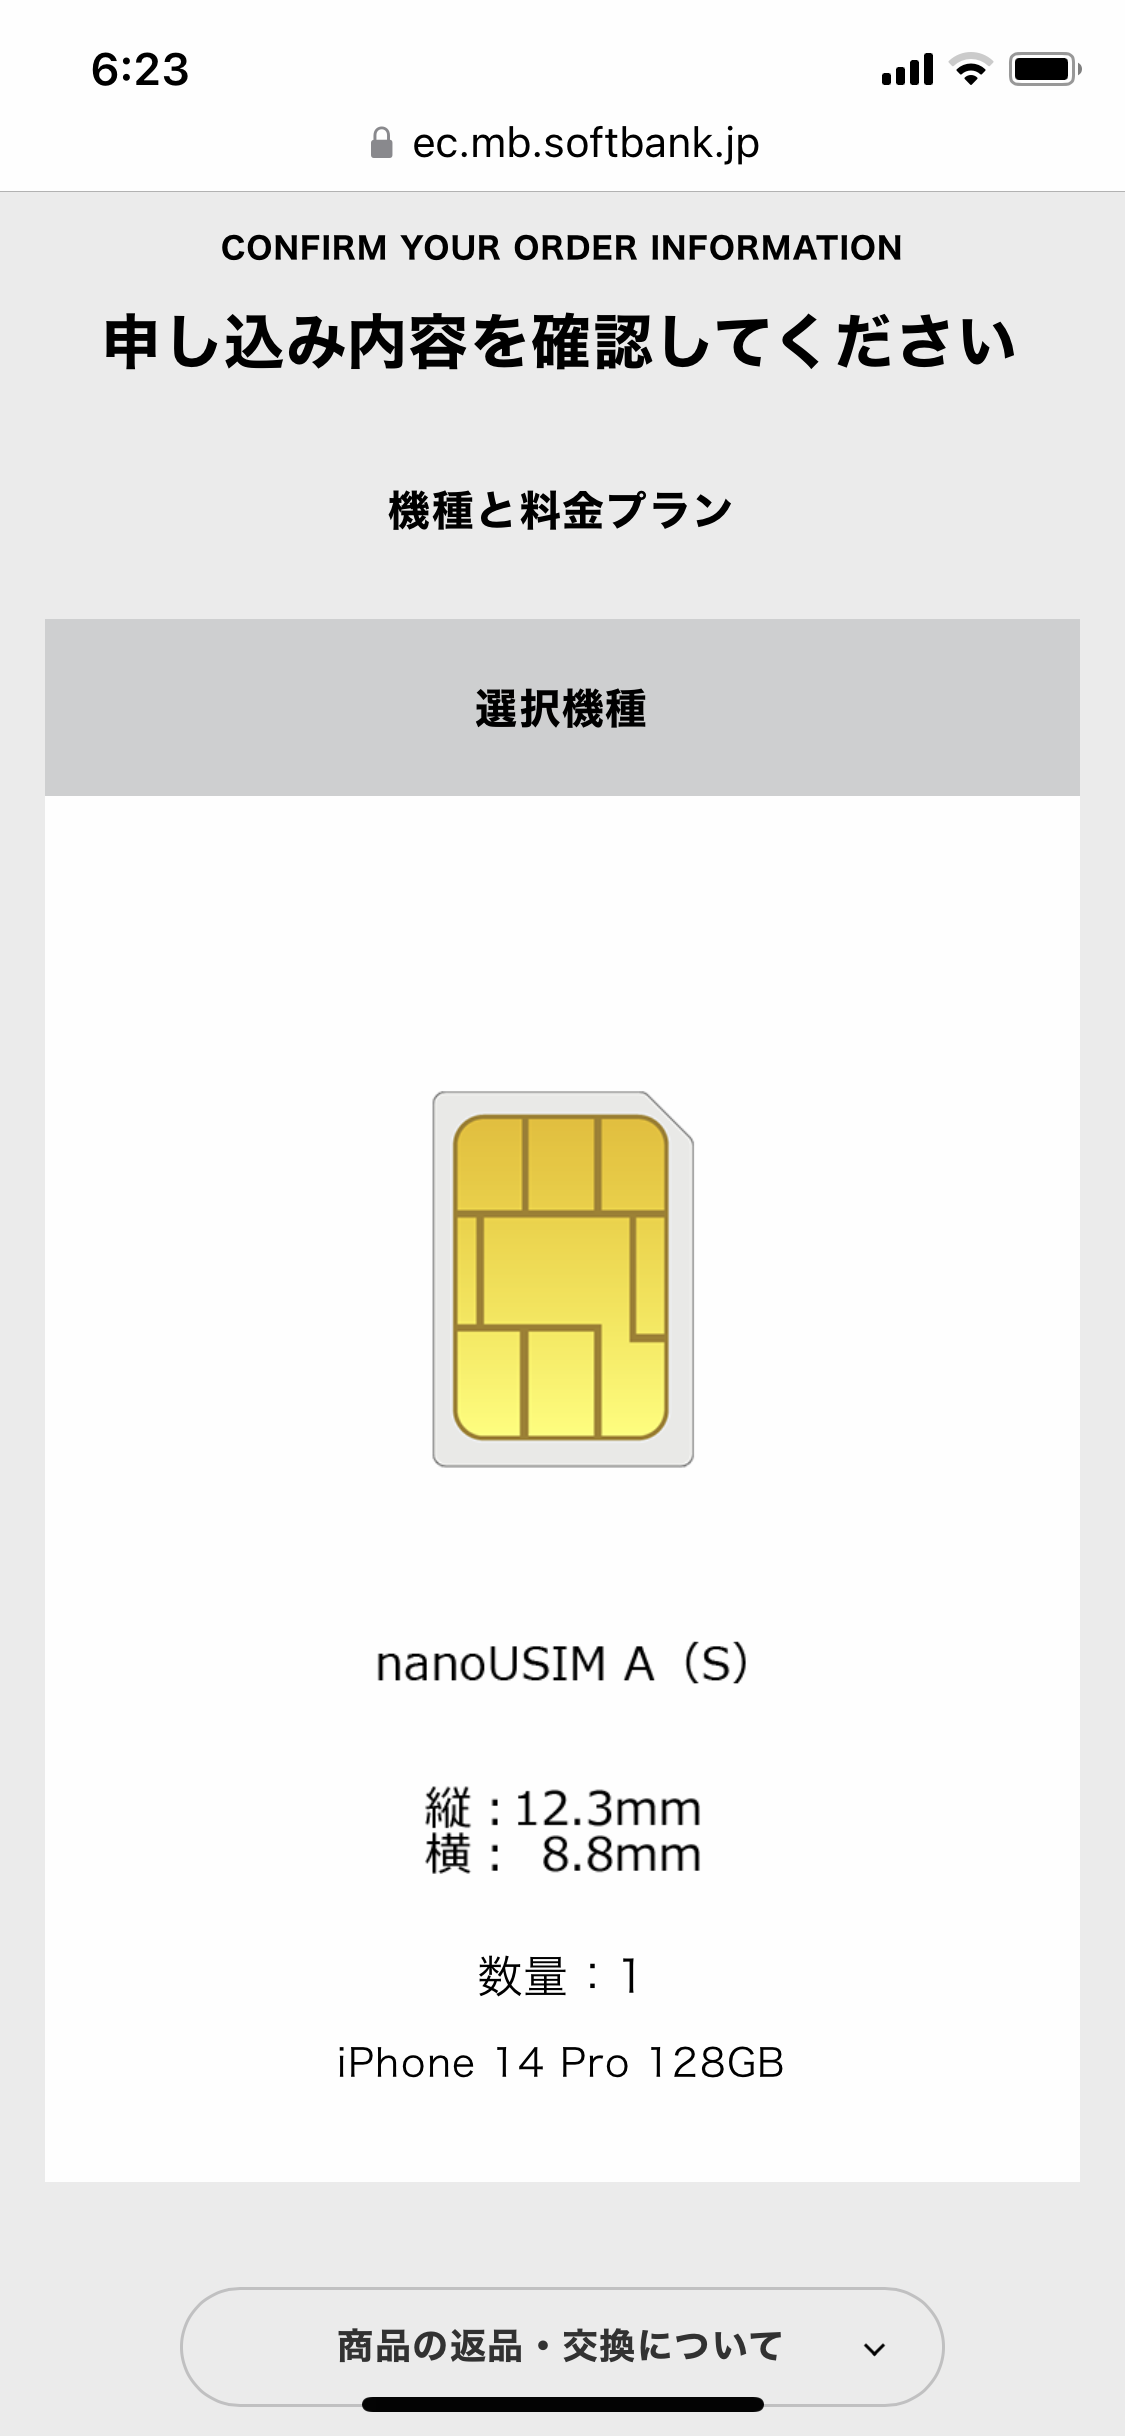 申込内容の確認画面。nano USIMカードA（S）のイメージとサイズ等が表示されている。